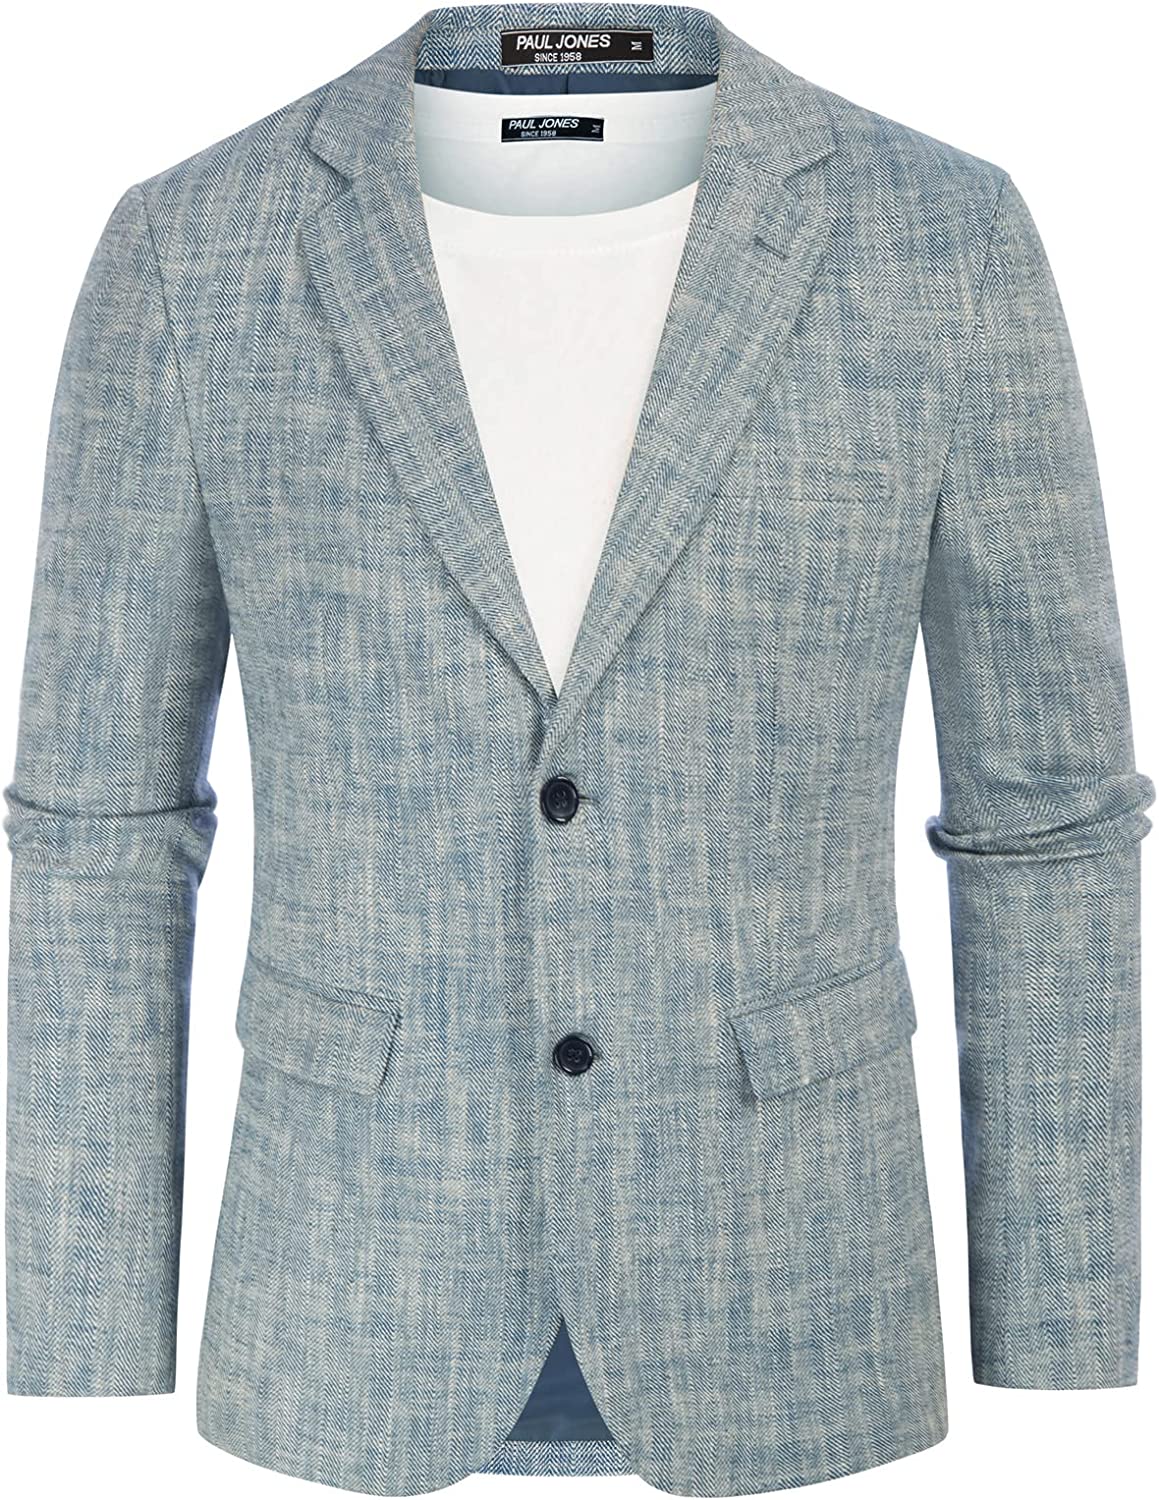 PJ Paul Jones Men's Slim Fit Lightweight Linen Jacket Tailored Blazer Sport  Coat